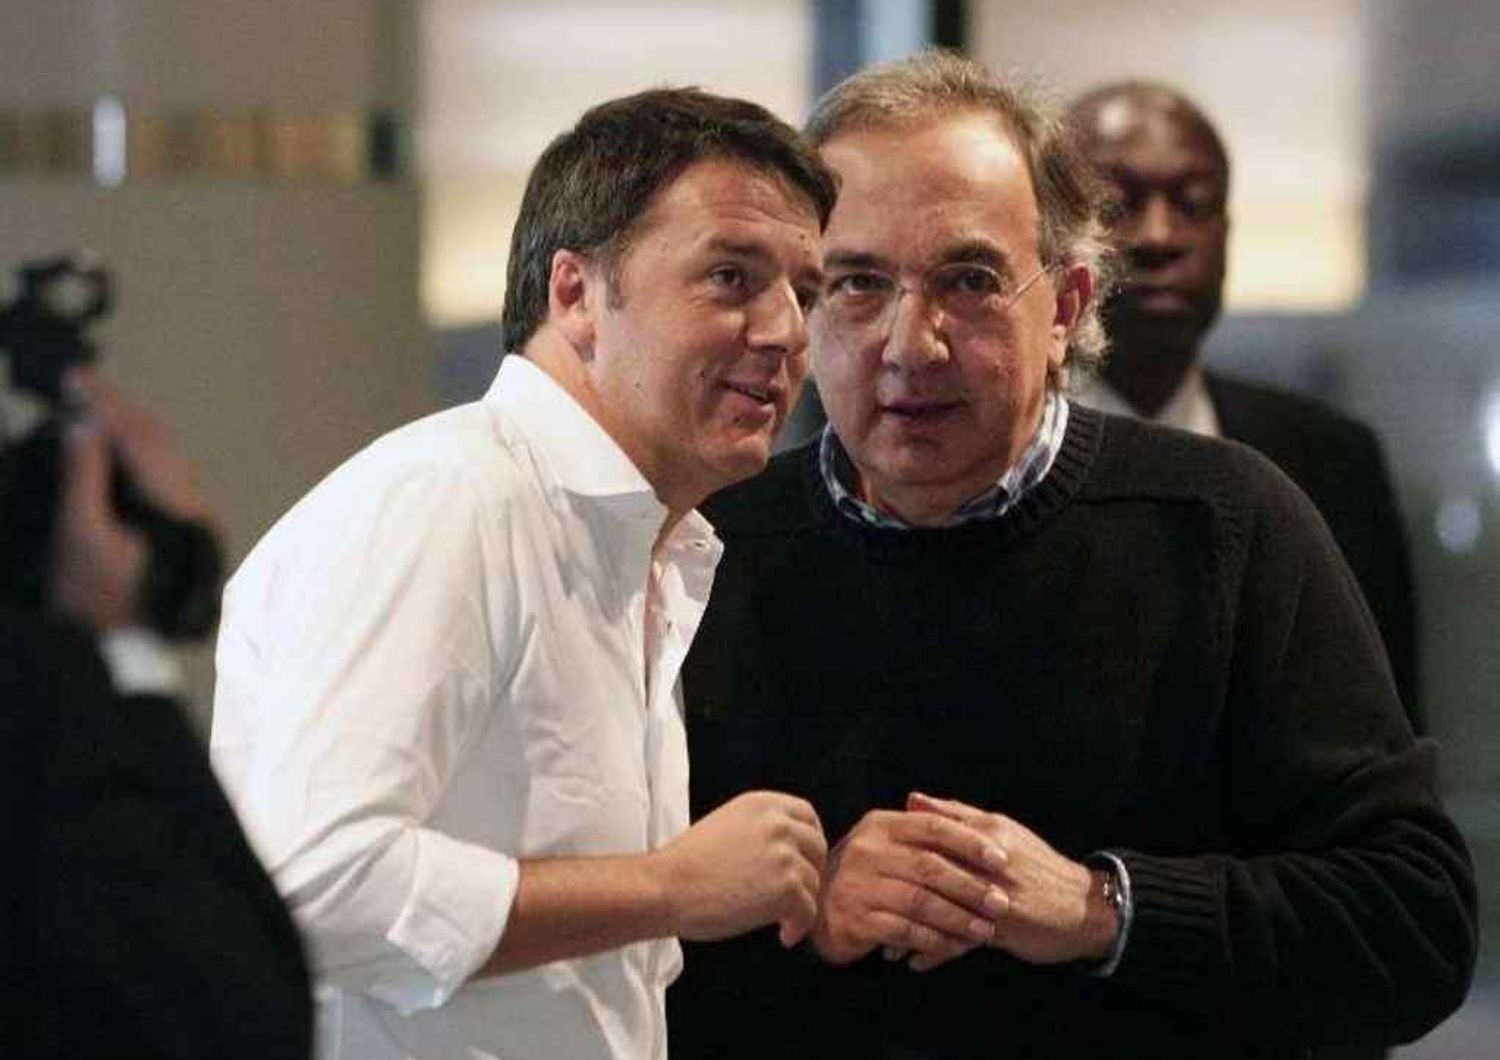 Marchionne incontra Renzi, "Appoggio il premier"